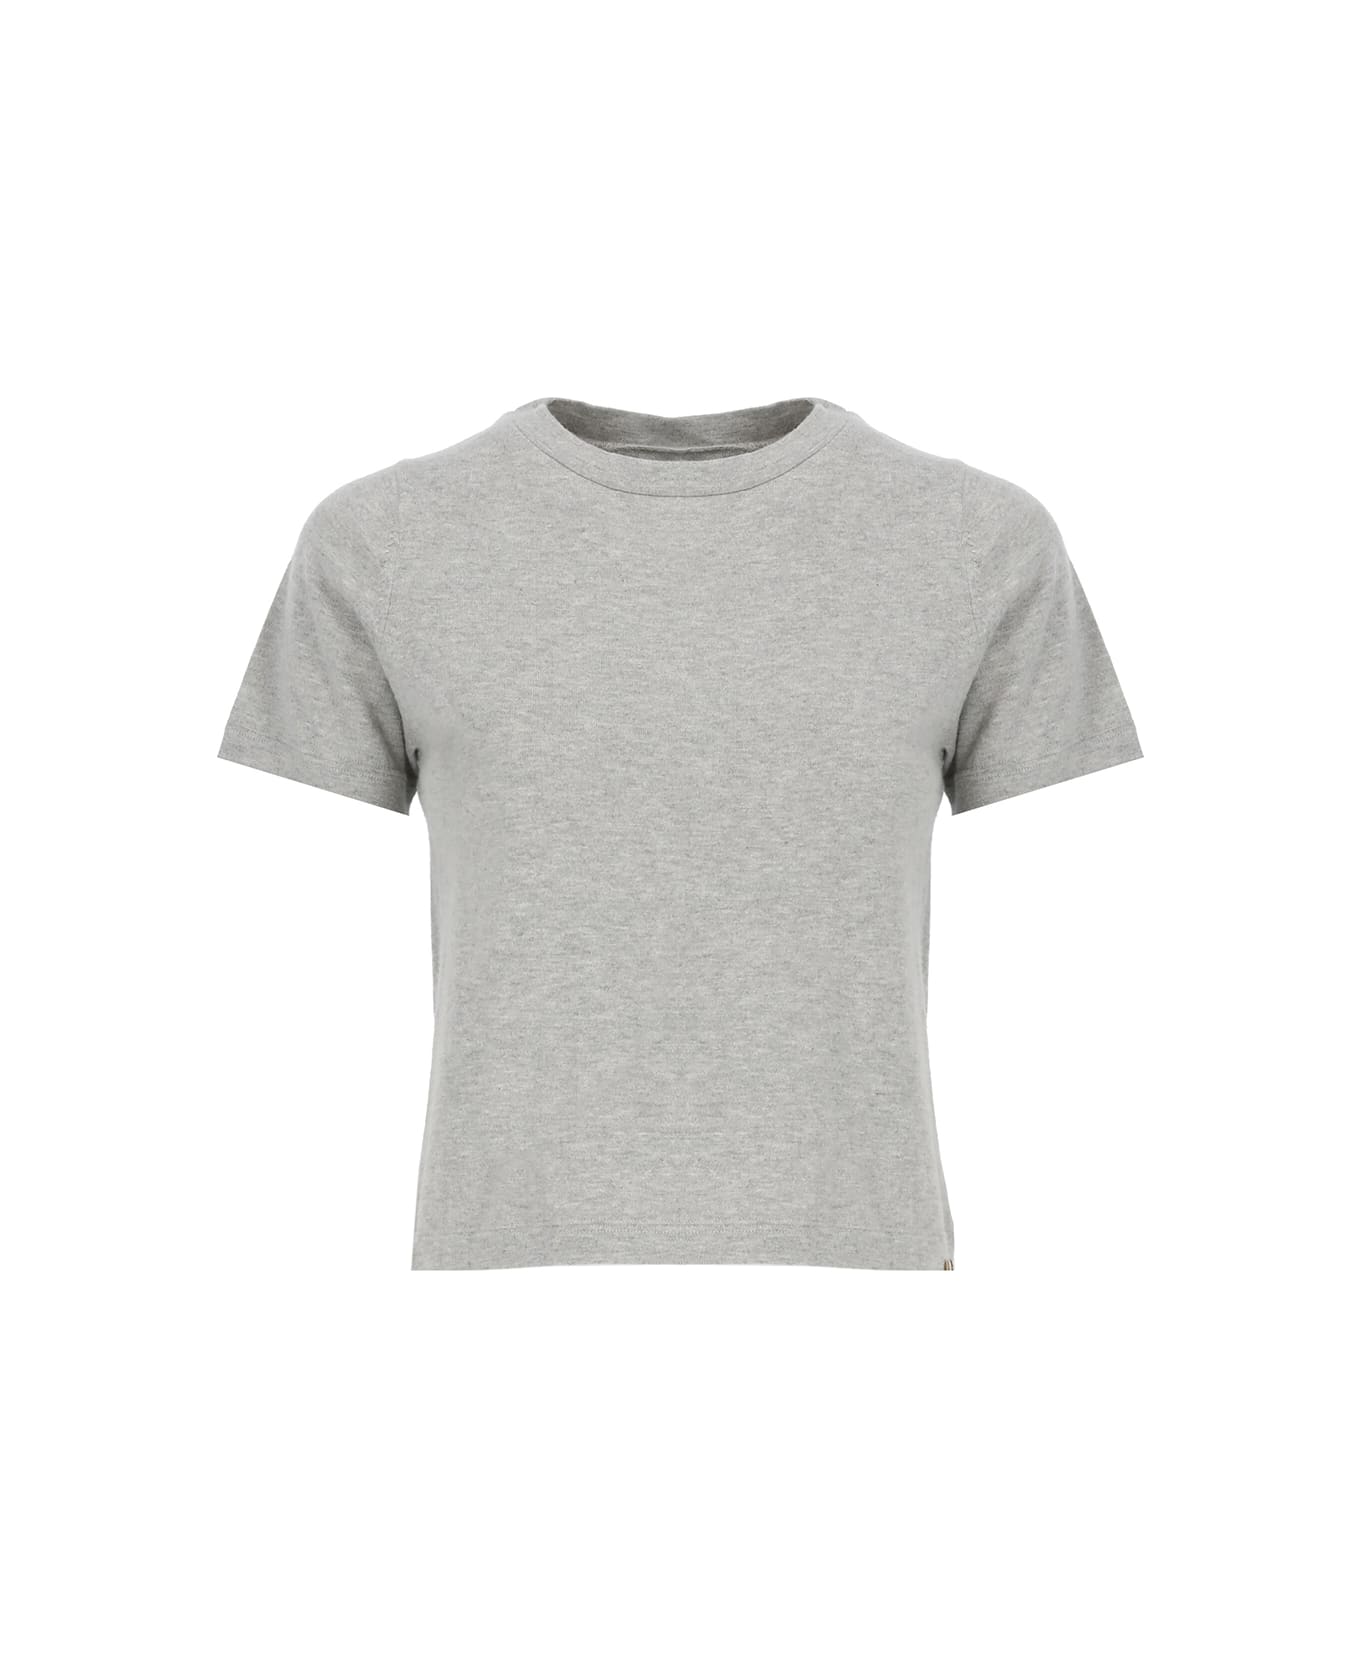 Extreme Cashmere 267 Tina T-shirt - Grey